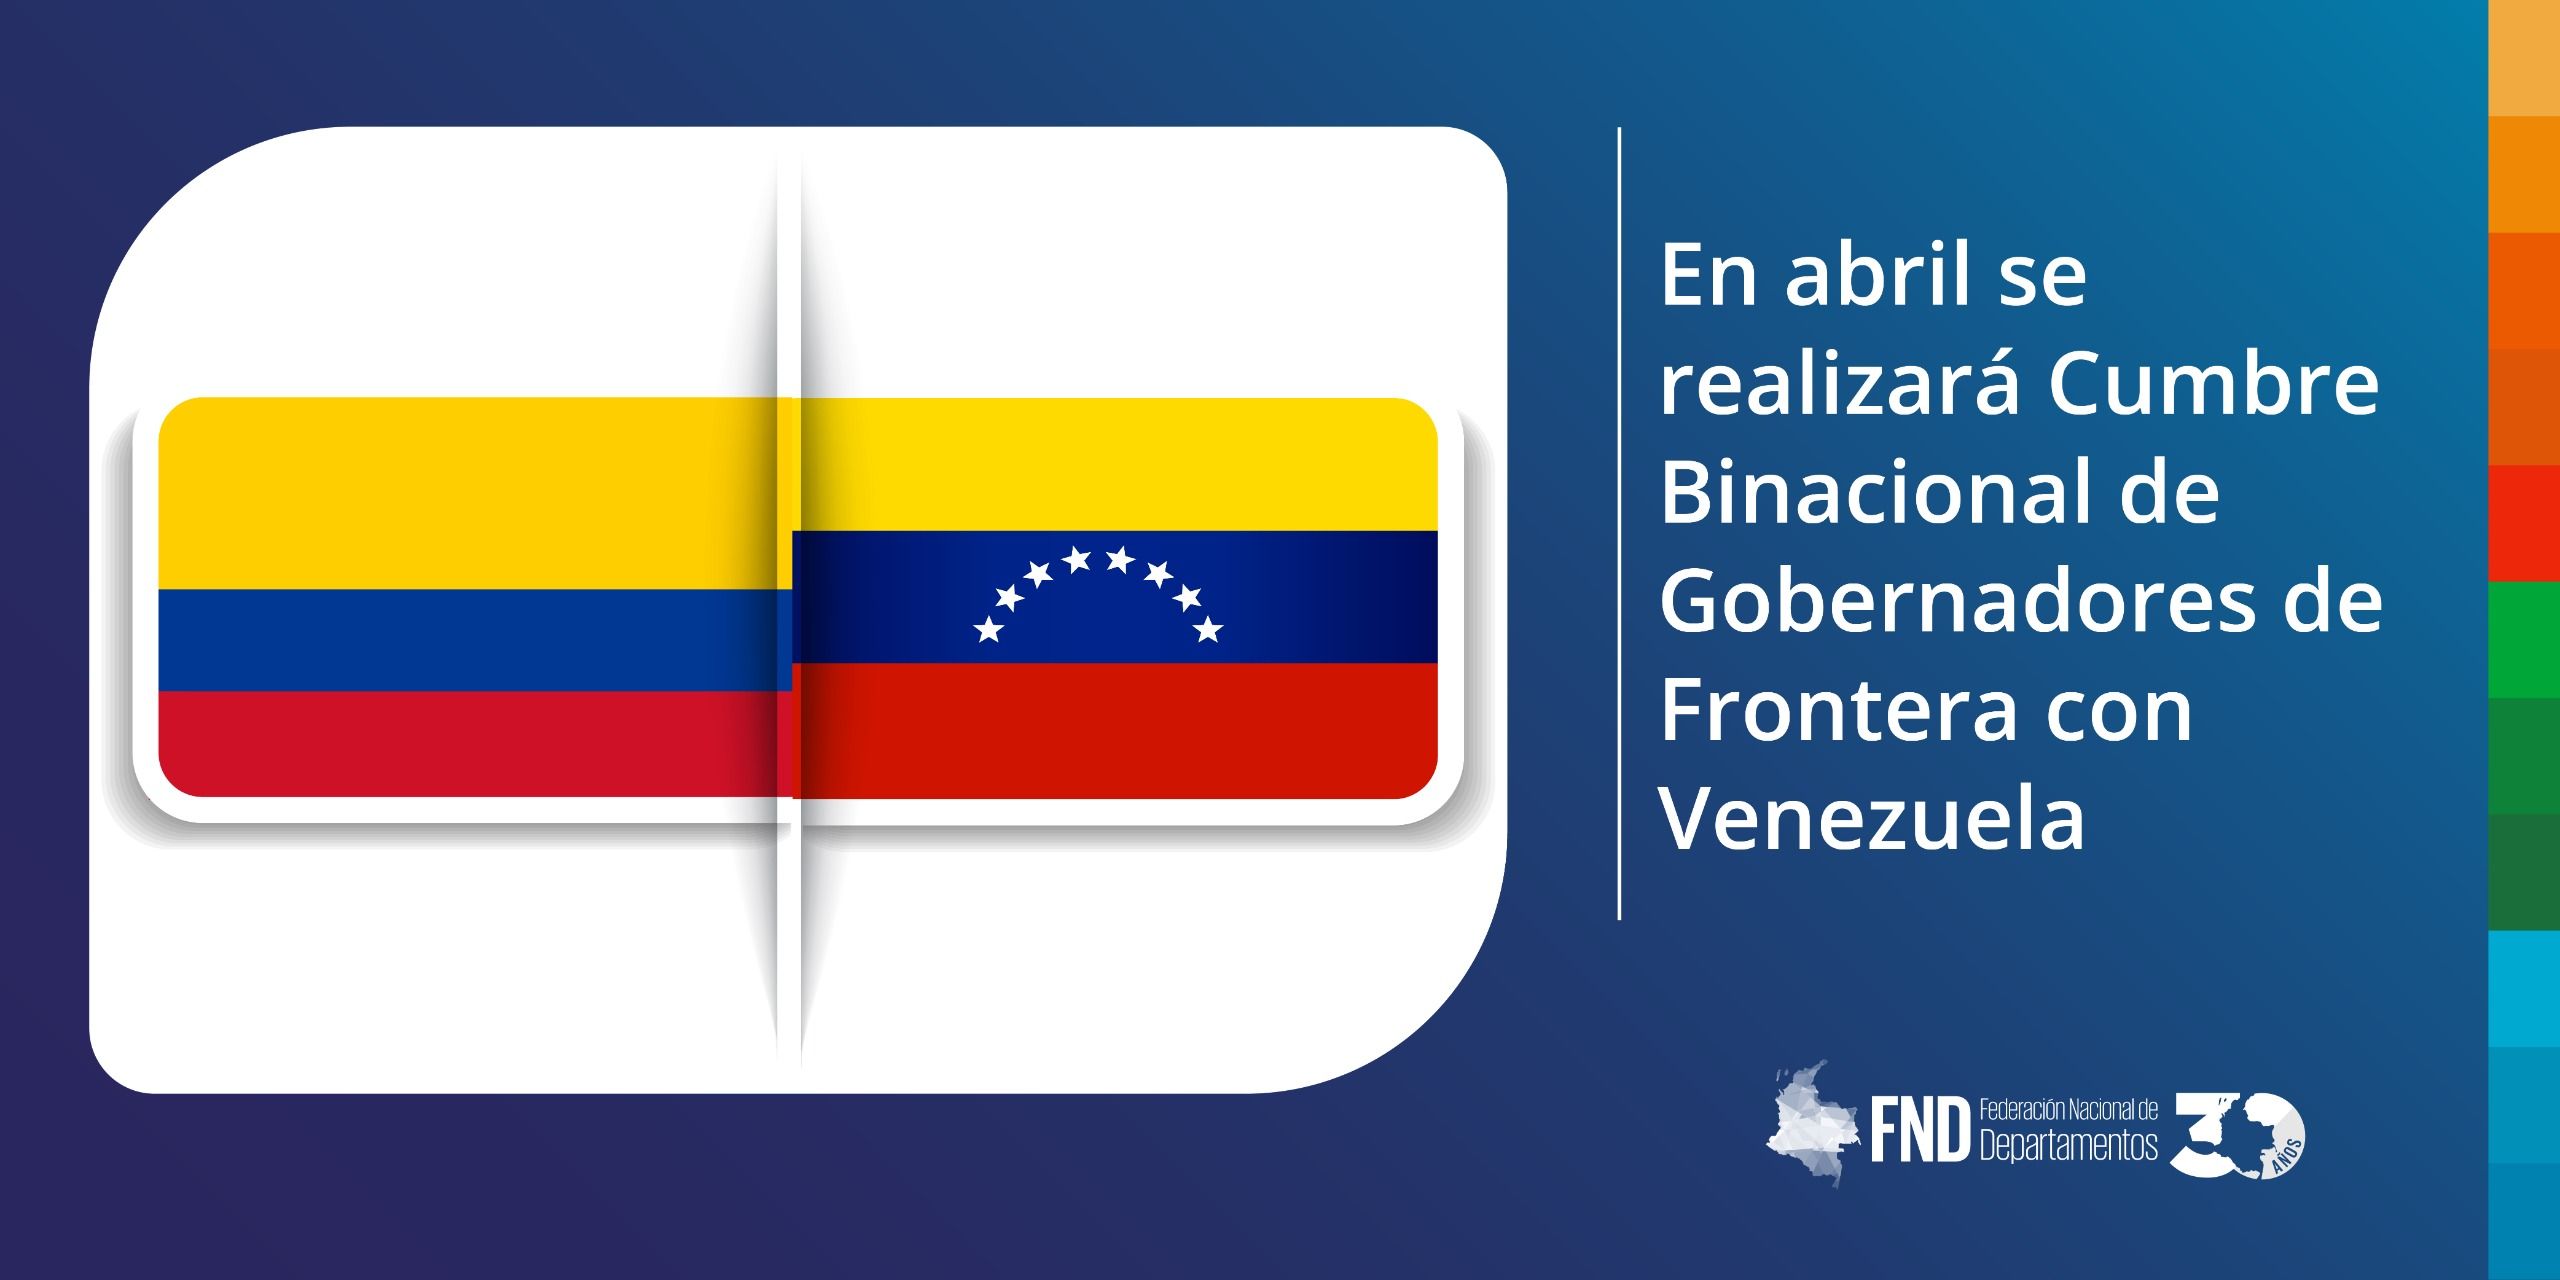 image En abril se realizará Cumbre Binacional de Gobernadores de Frontera con Venezuela